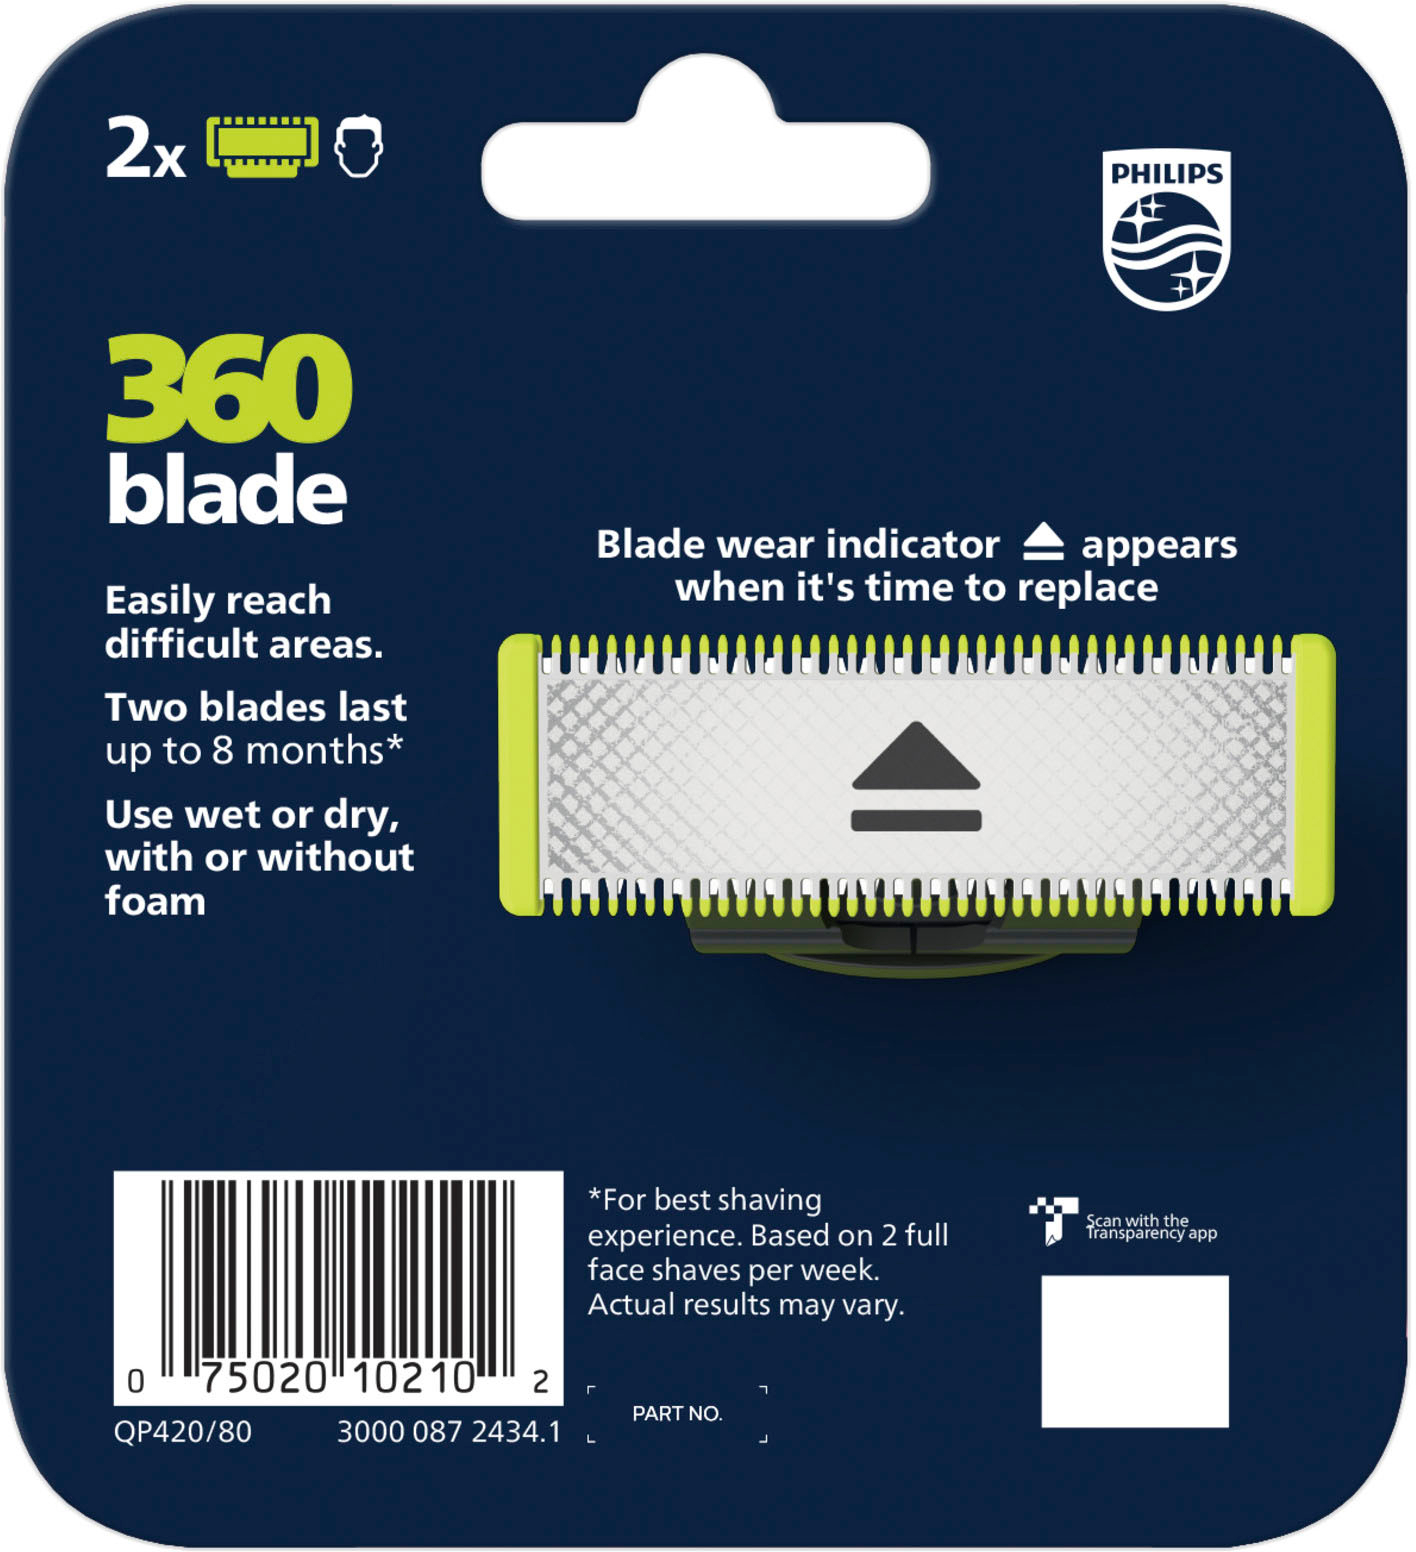 ONE BLADE - Lame 360 Blade, 1 Unité